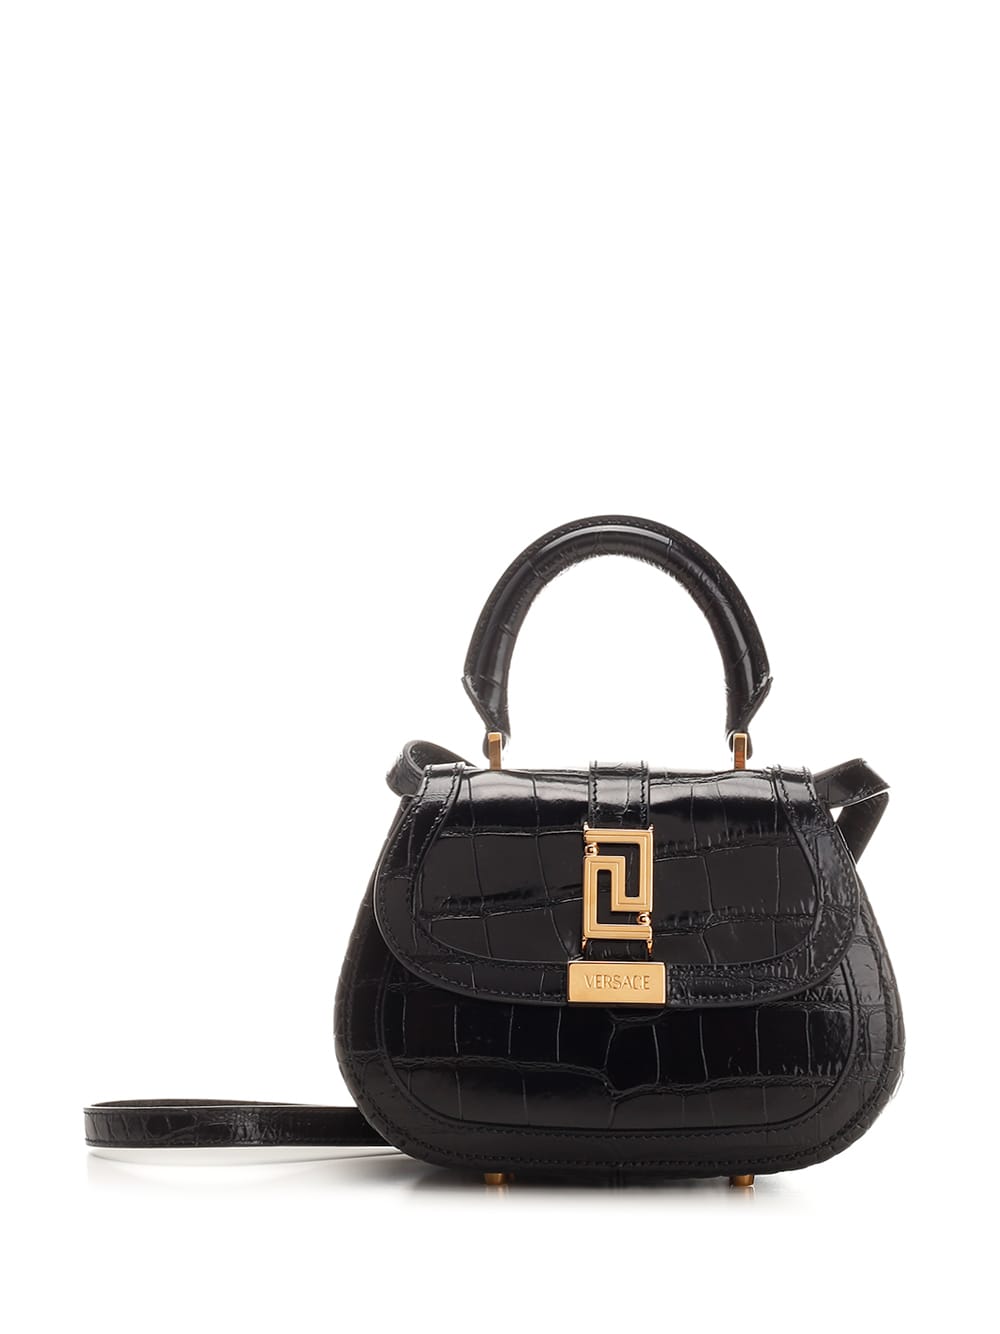 Versace Embossed Leather Mini Bag In Black